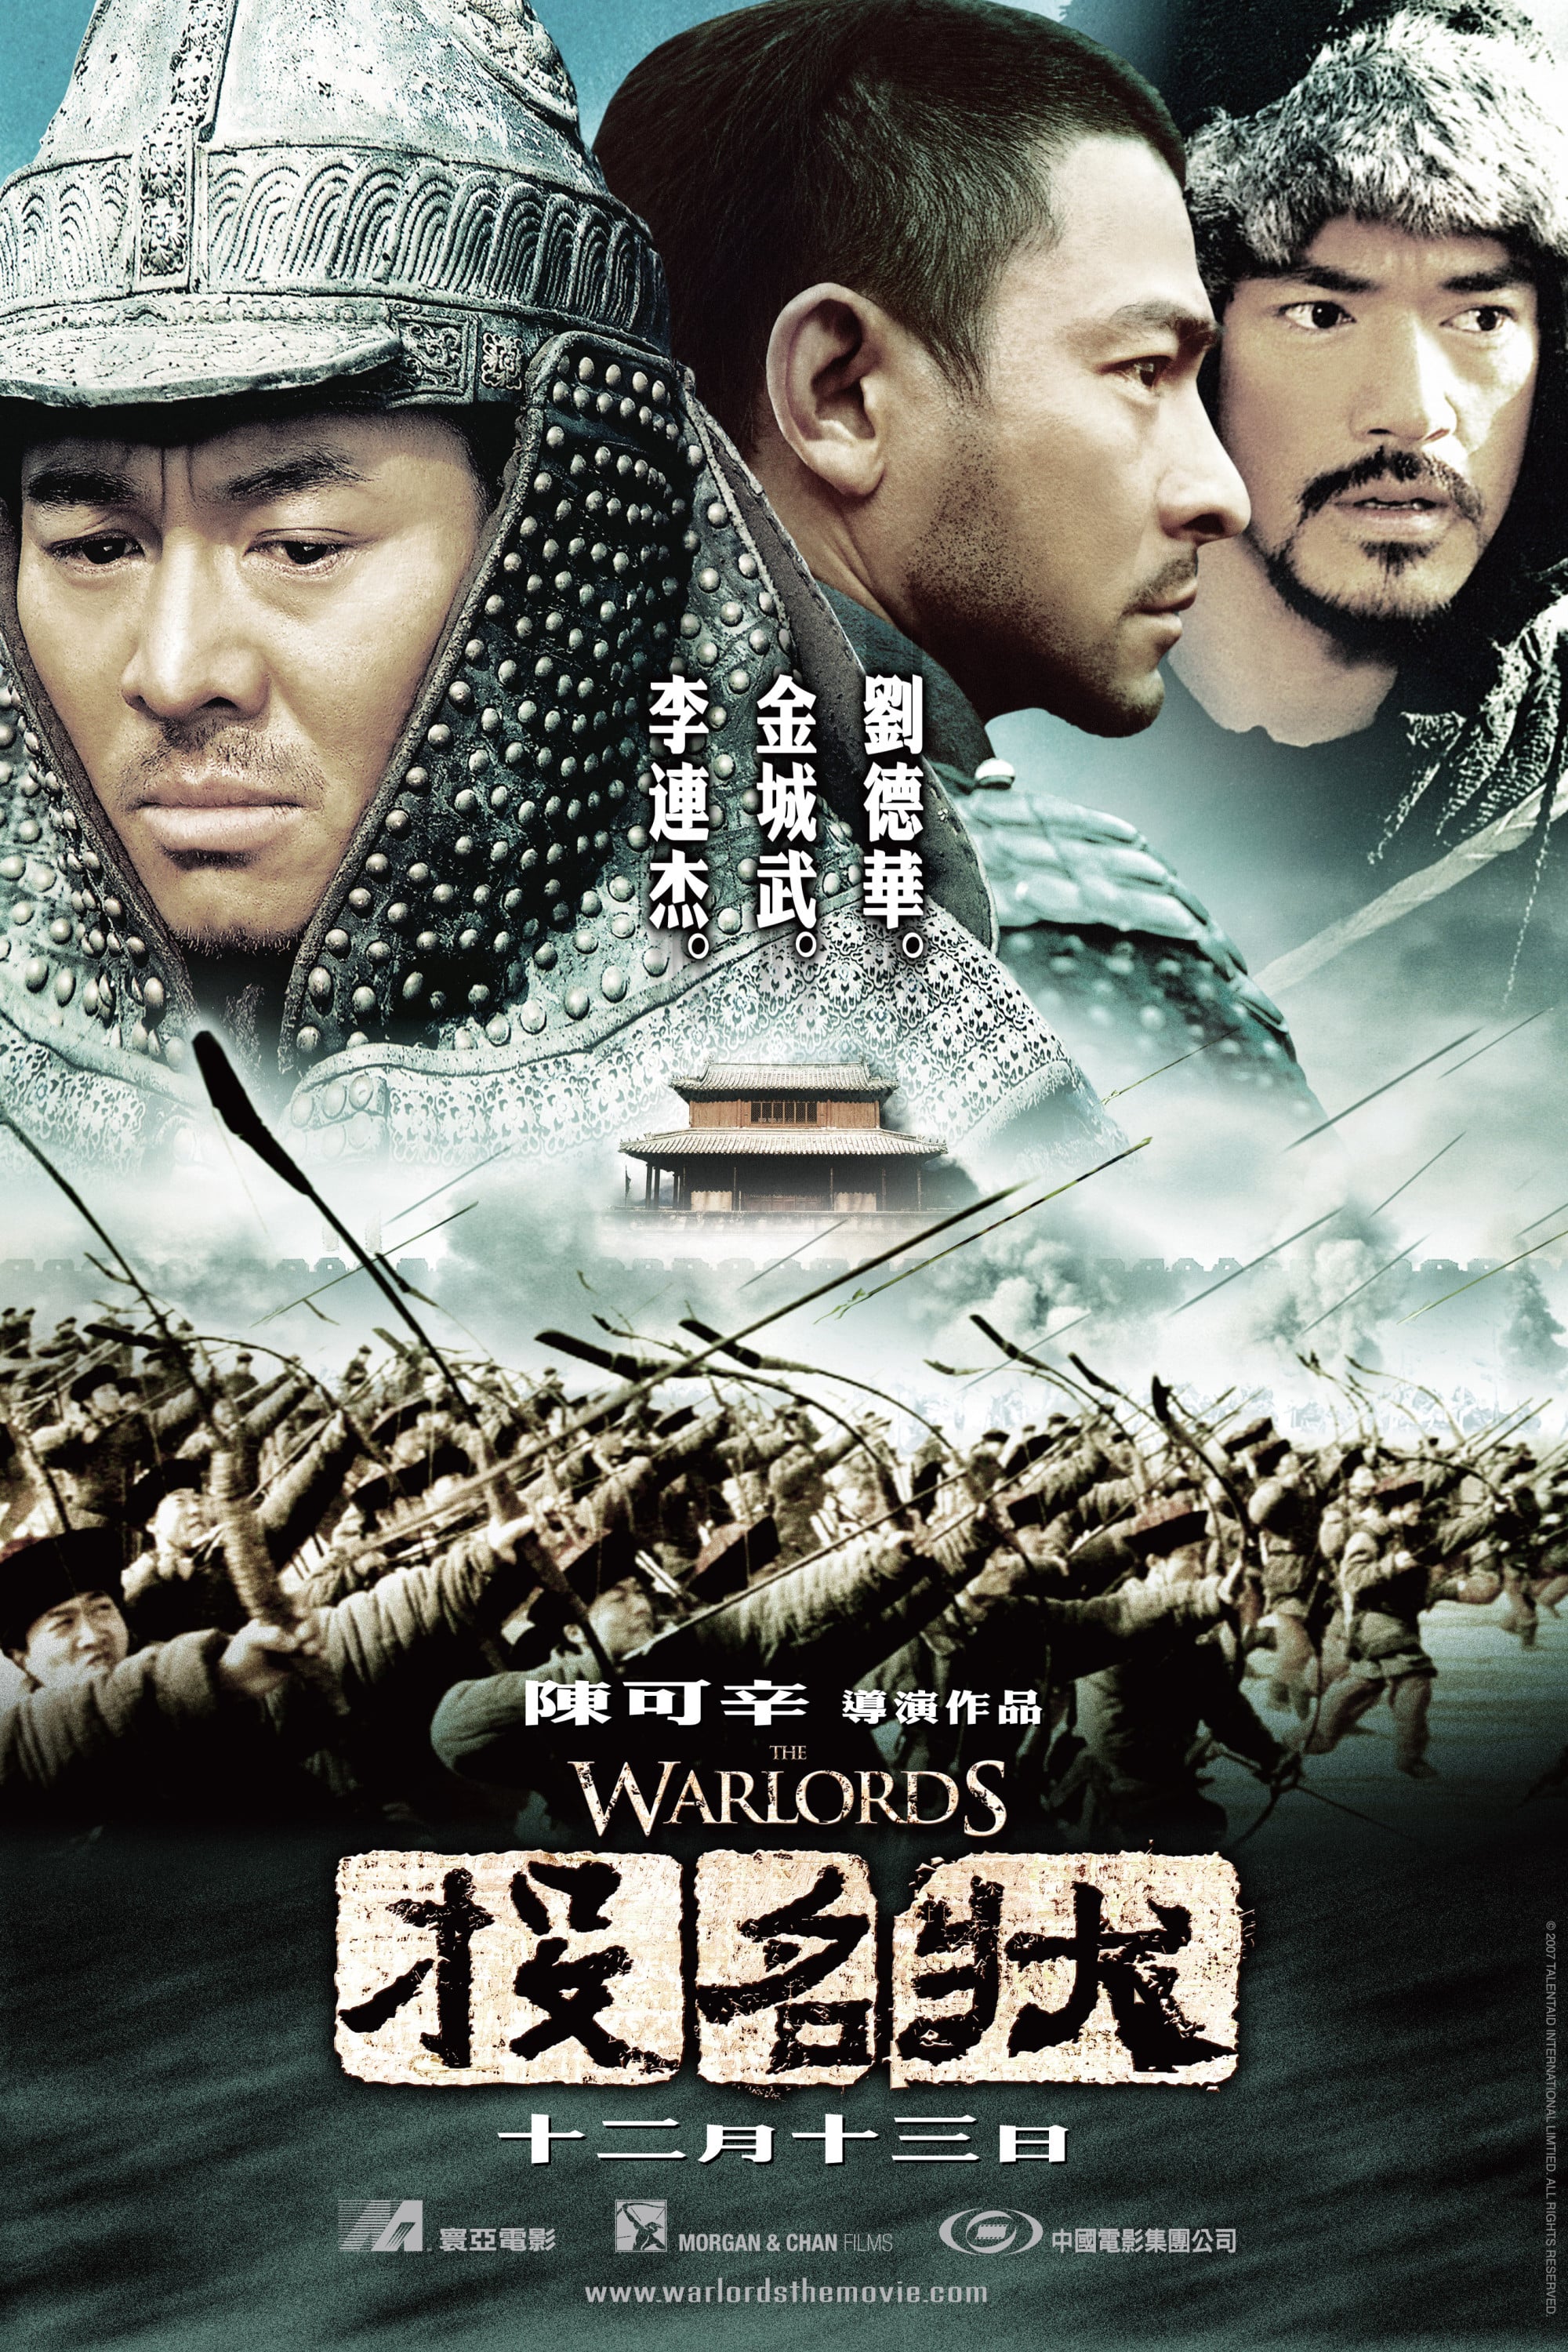 Plakat von "The Warlords"